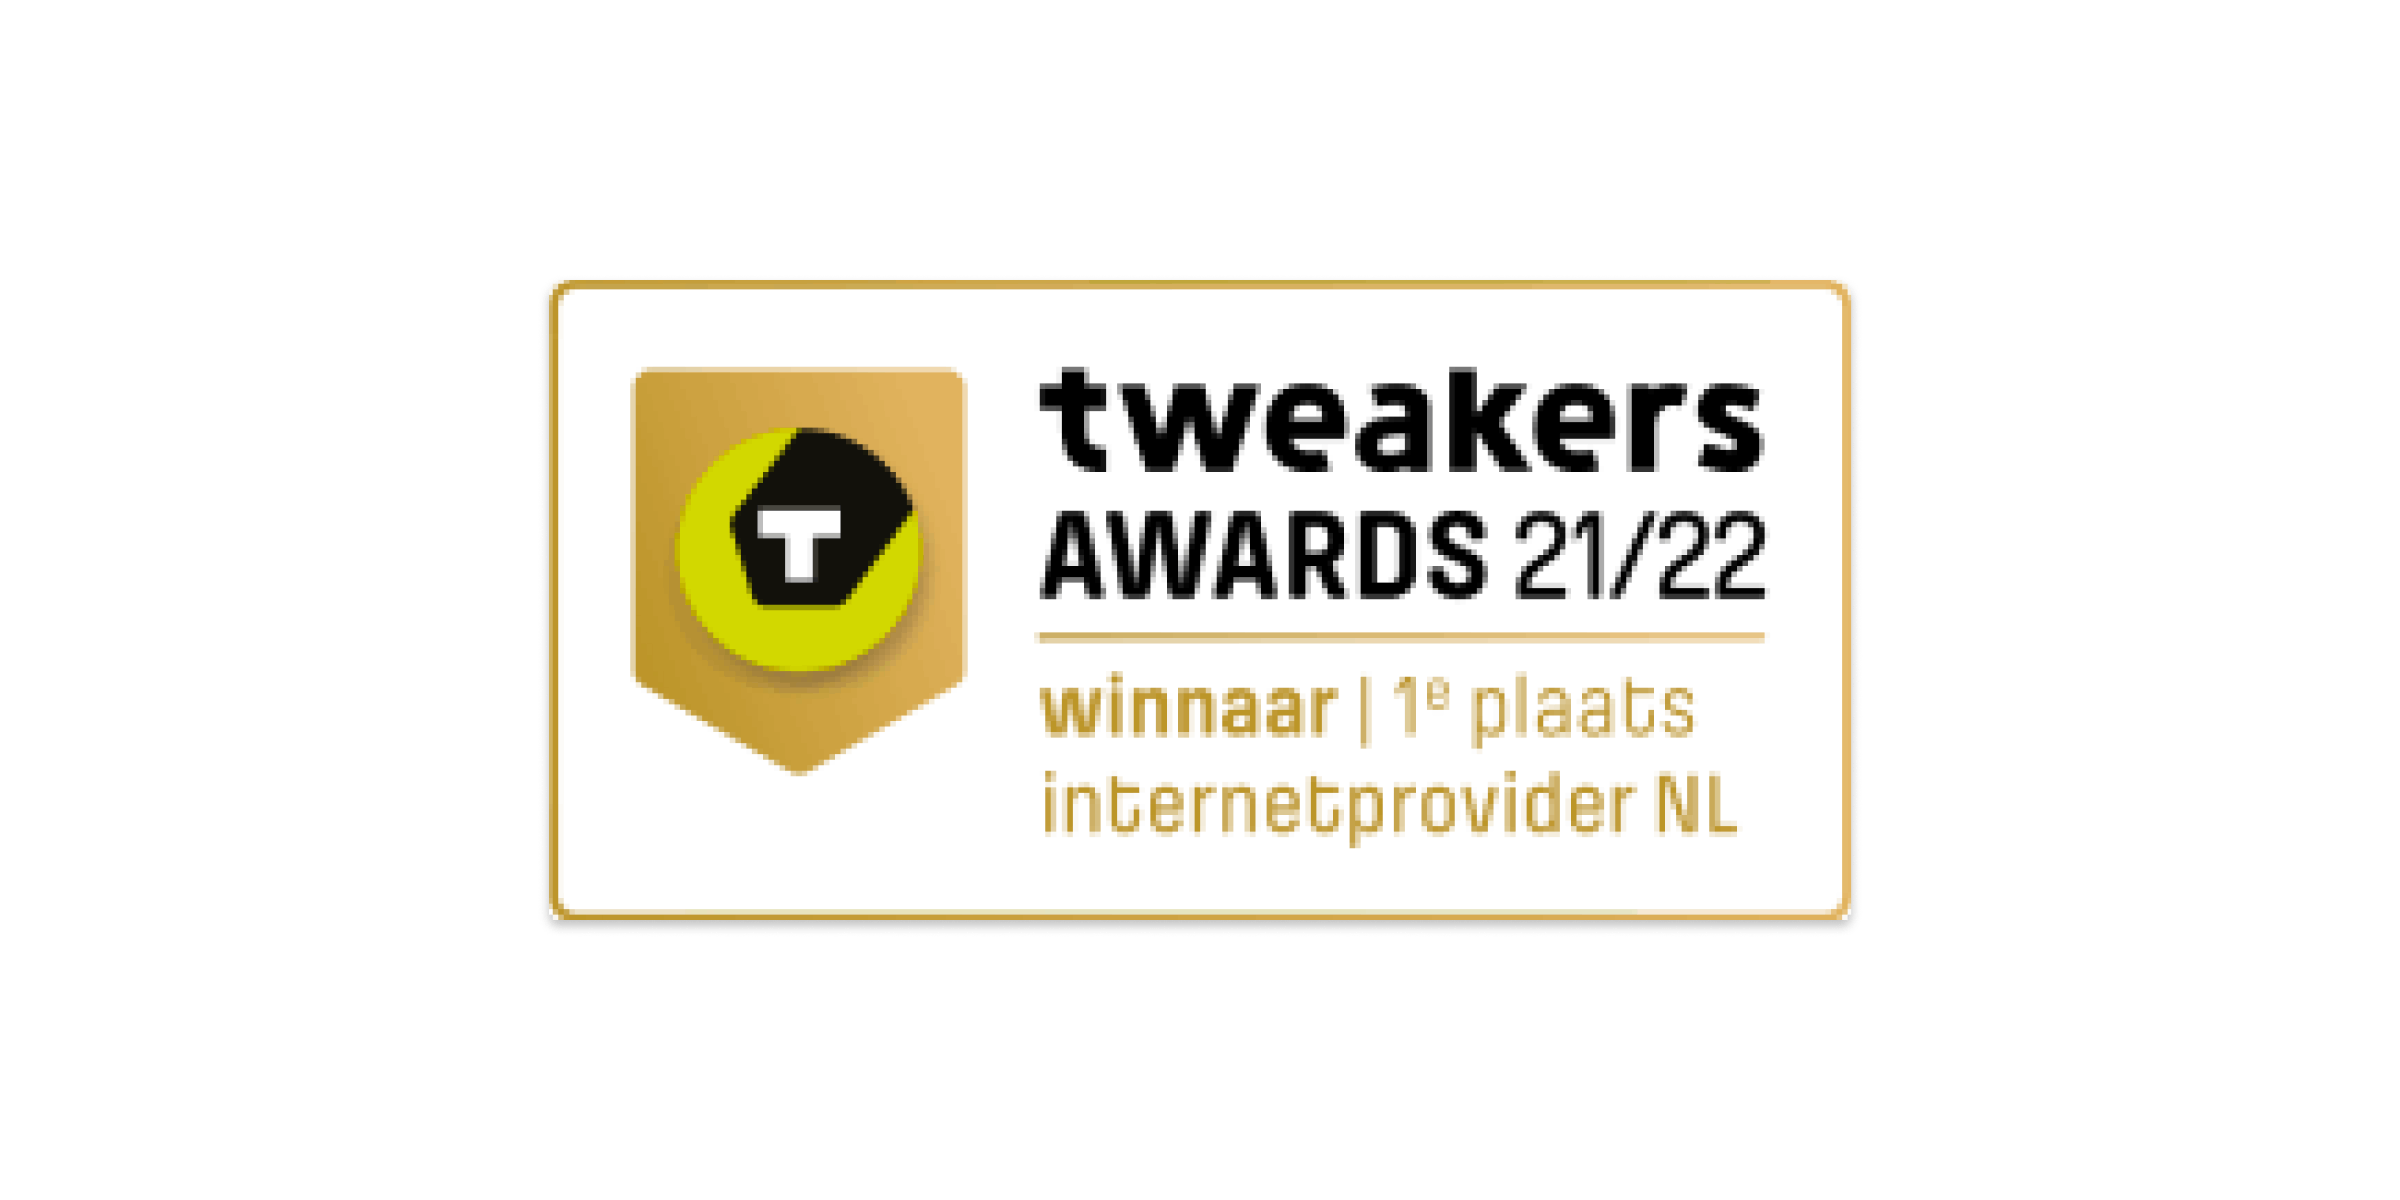 Tweakers awards 21/22 winnaar 1e plaats internetprovider NL